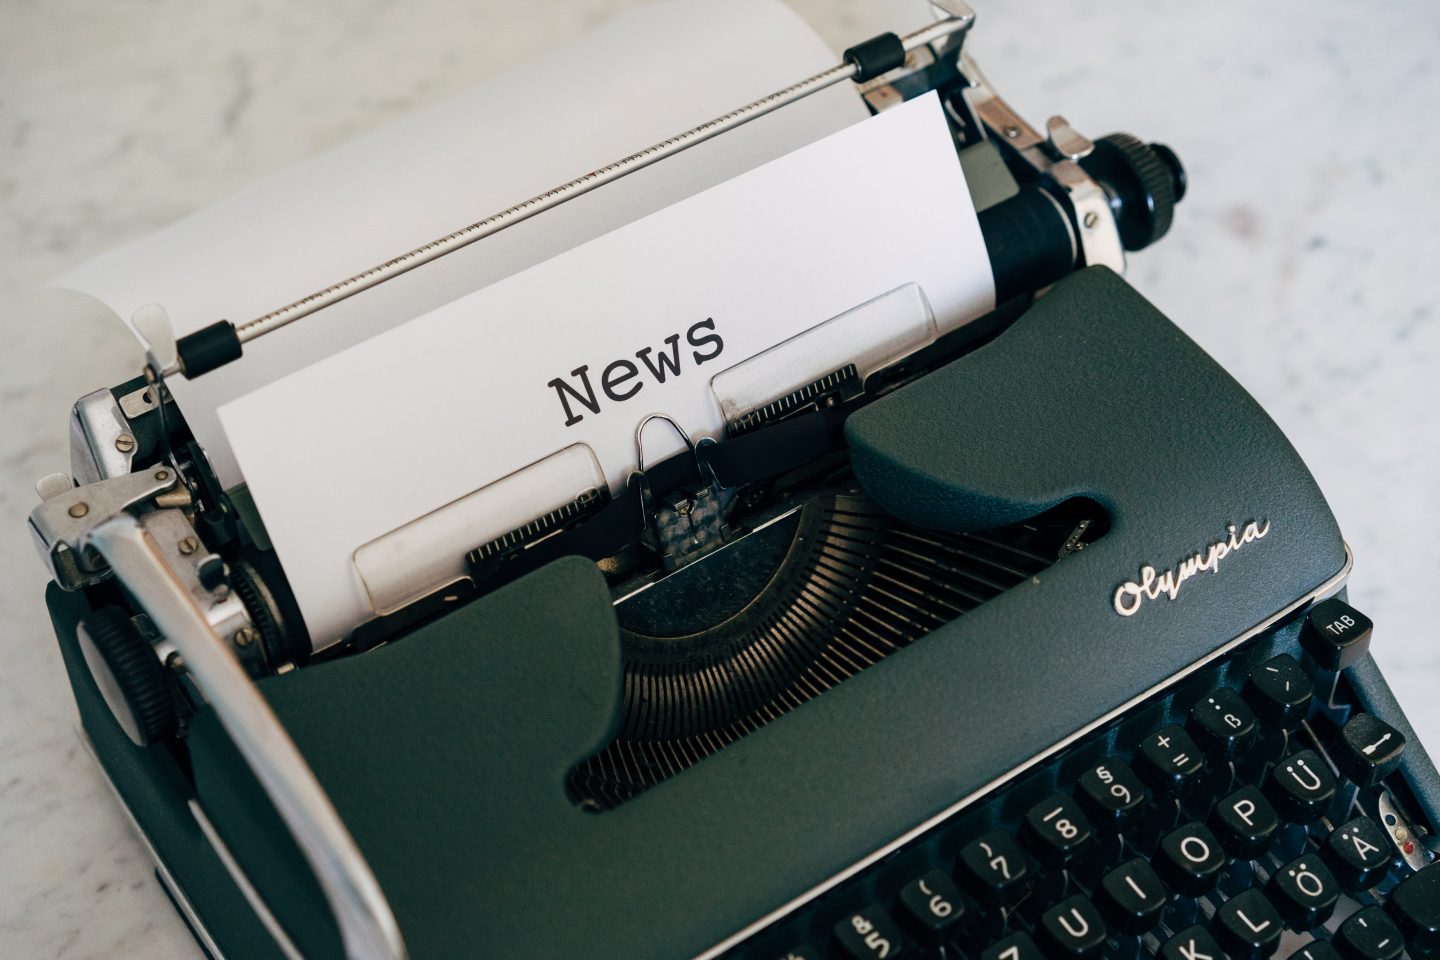 En skrivemaskin med et ark der det er skrevet "News".